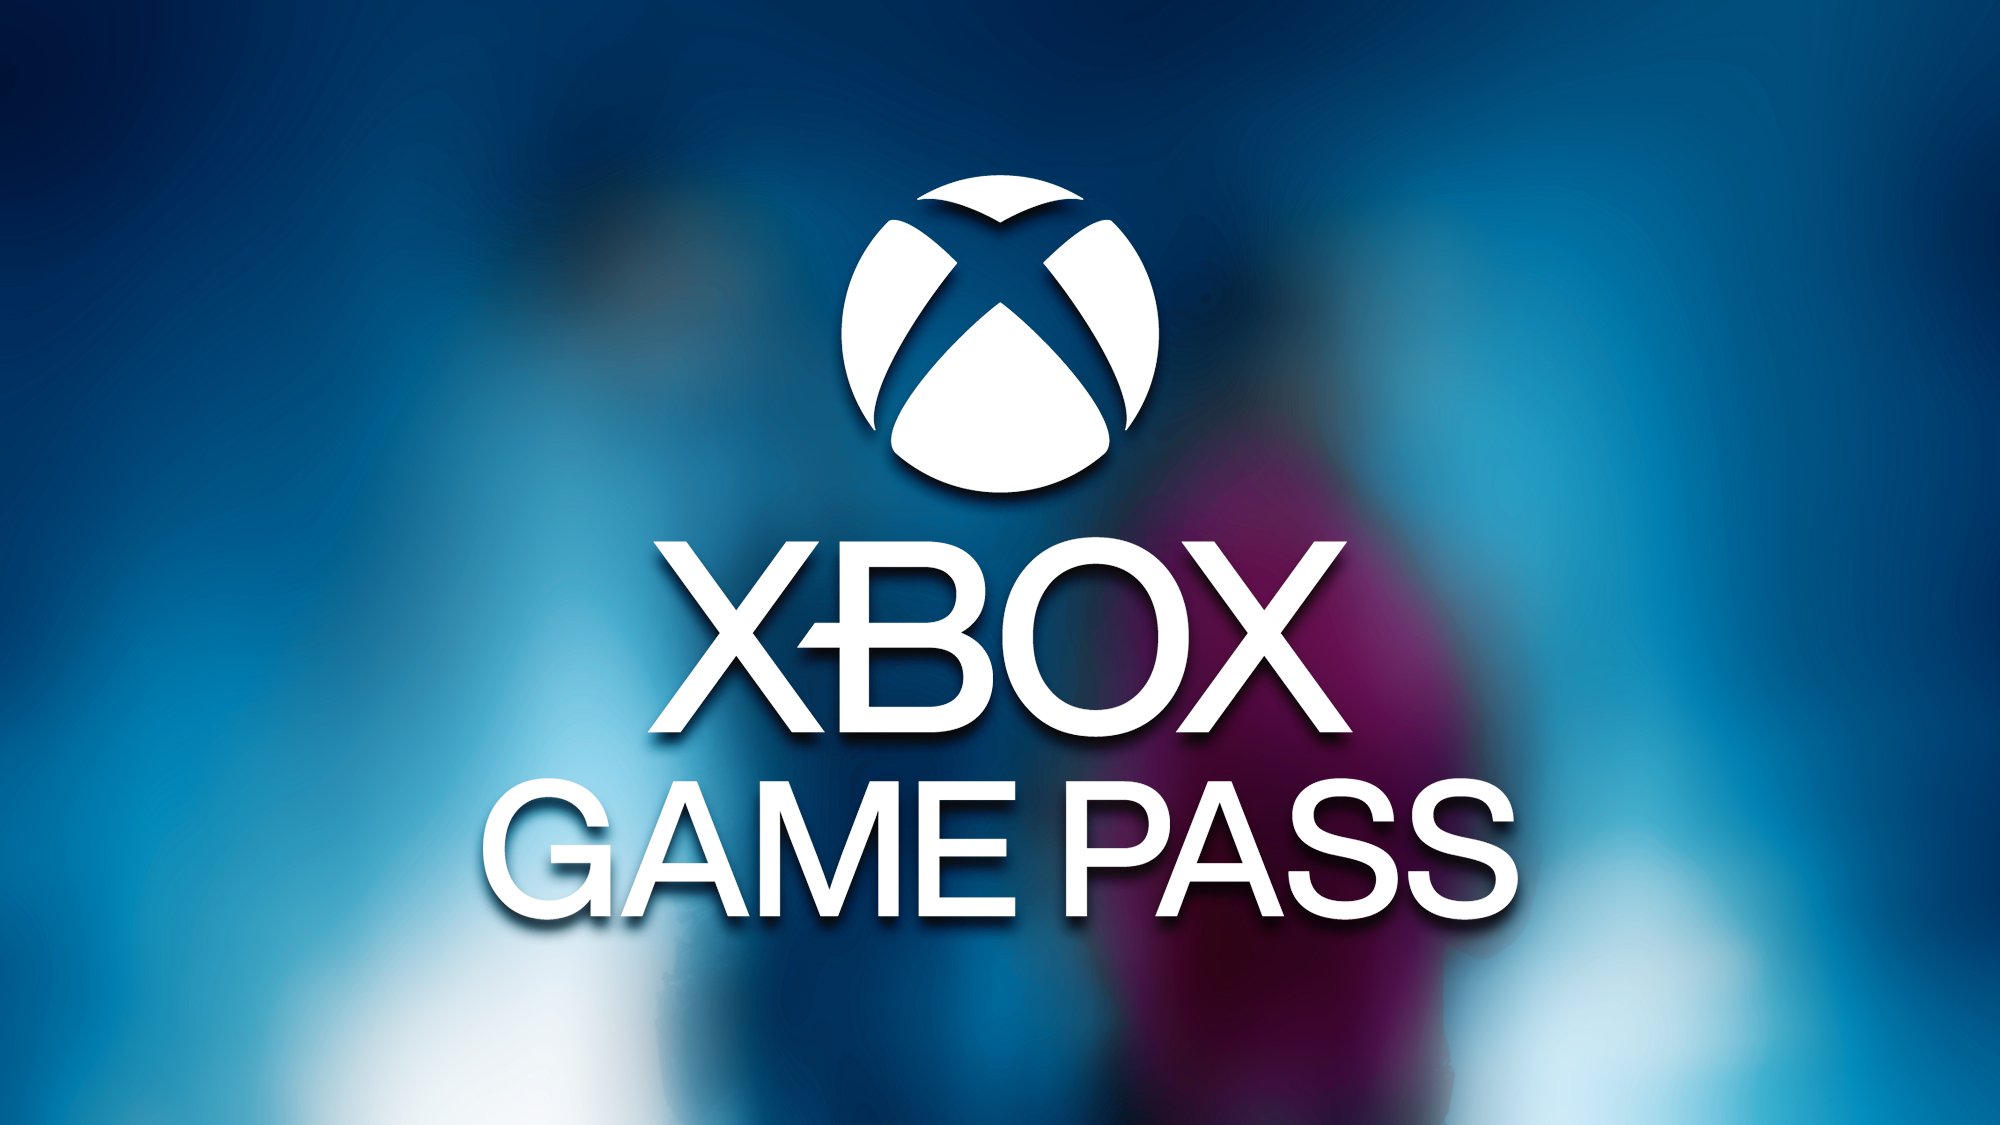 Xbox Game Pass : deux nouveaux jeux dispo, avec une licence légendaire